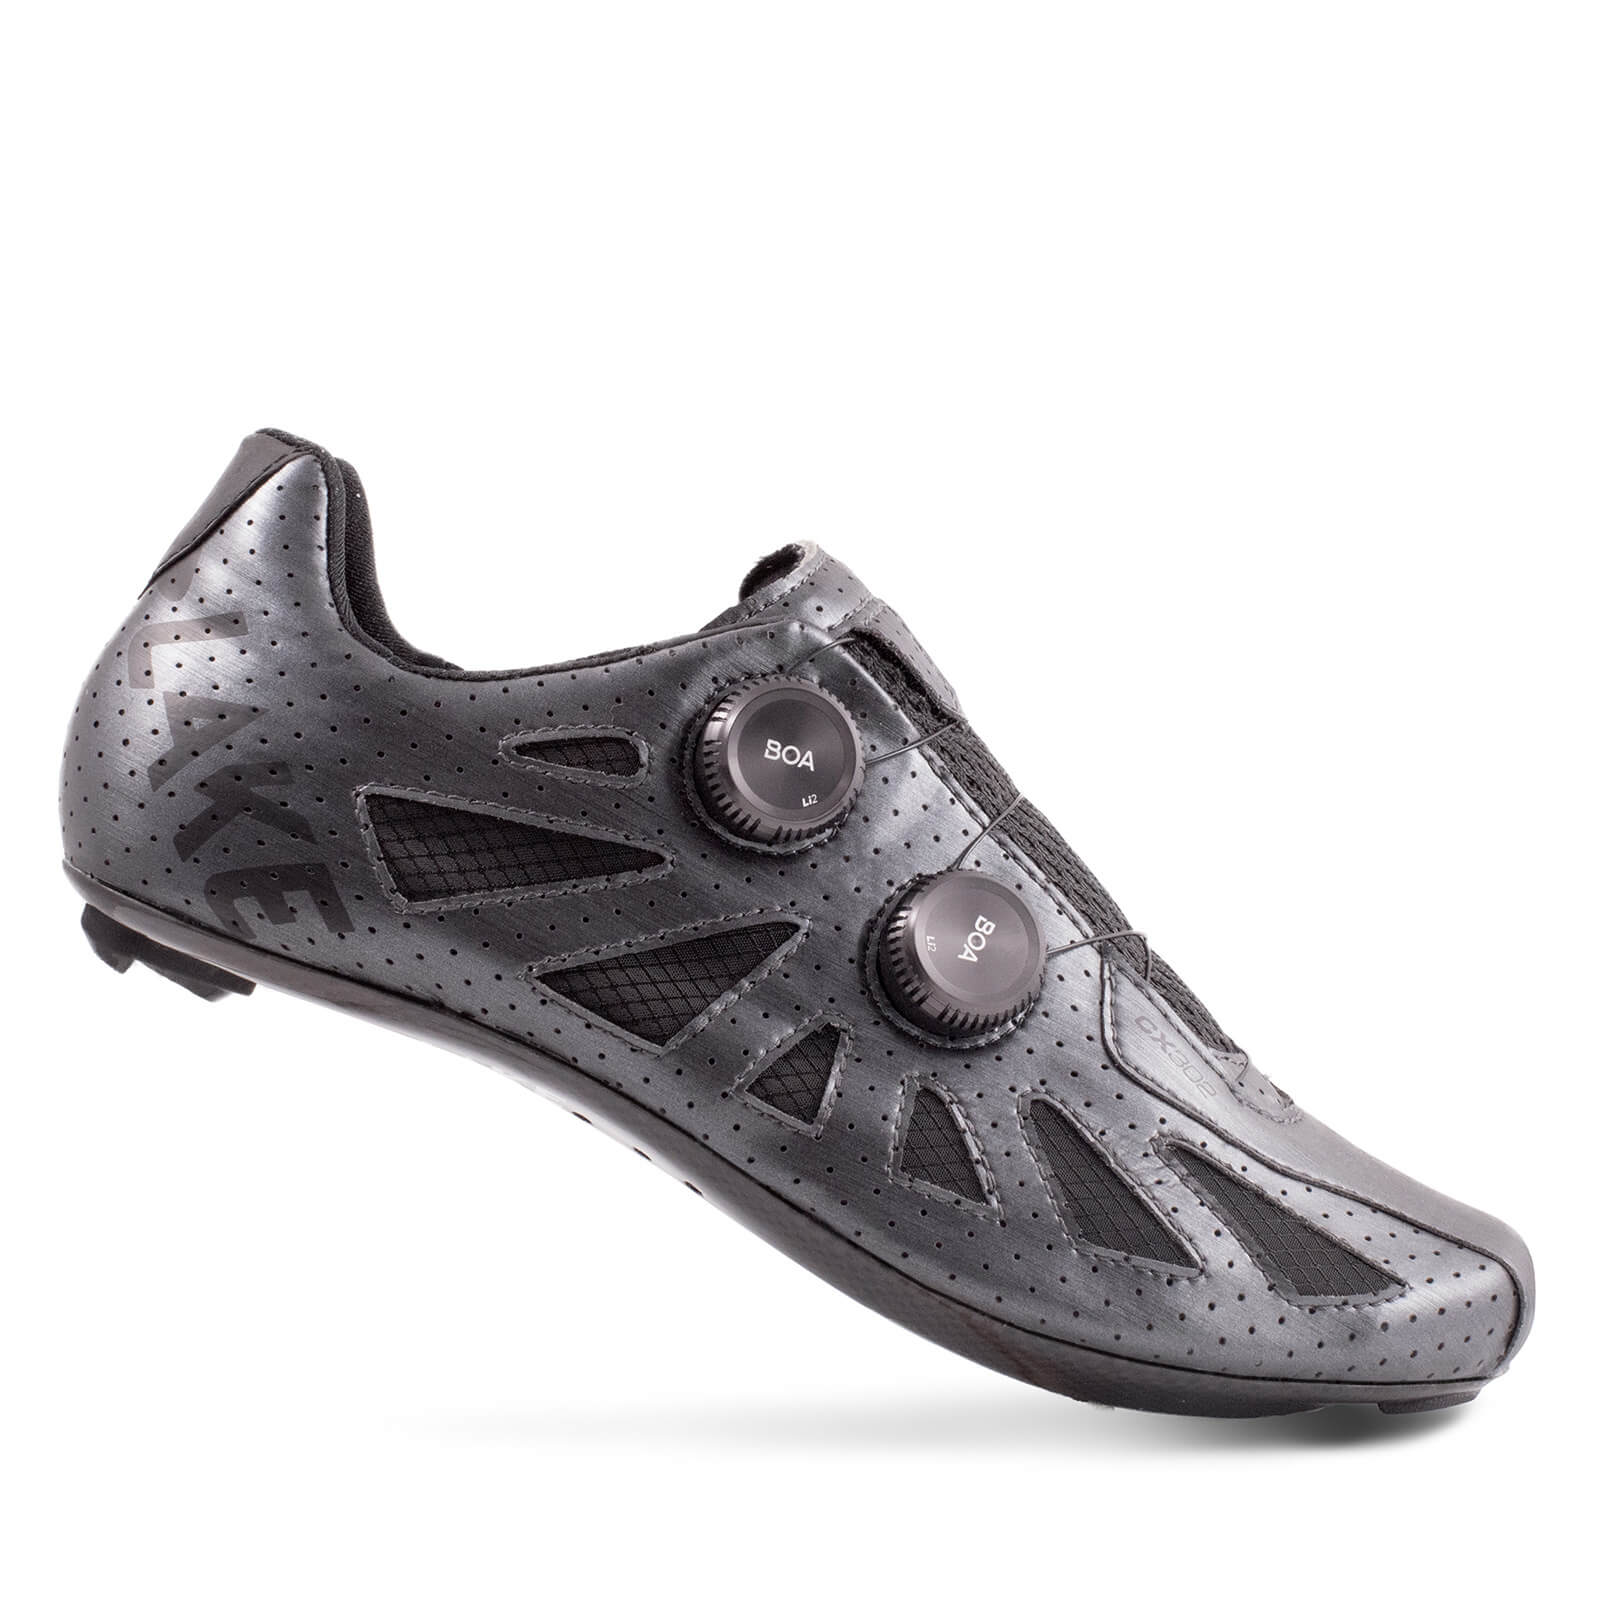 Lake CX302 SE Road Shoes - EU45 - Metal